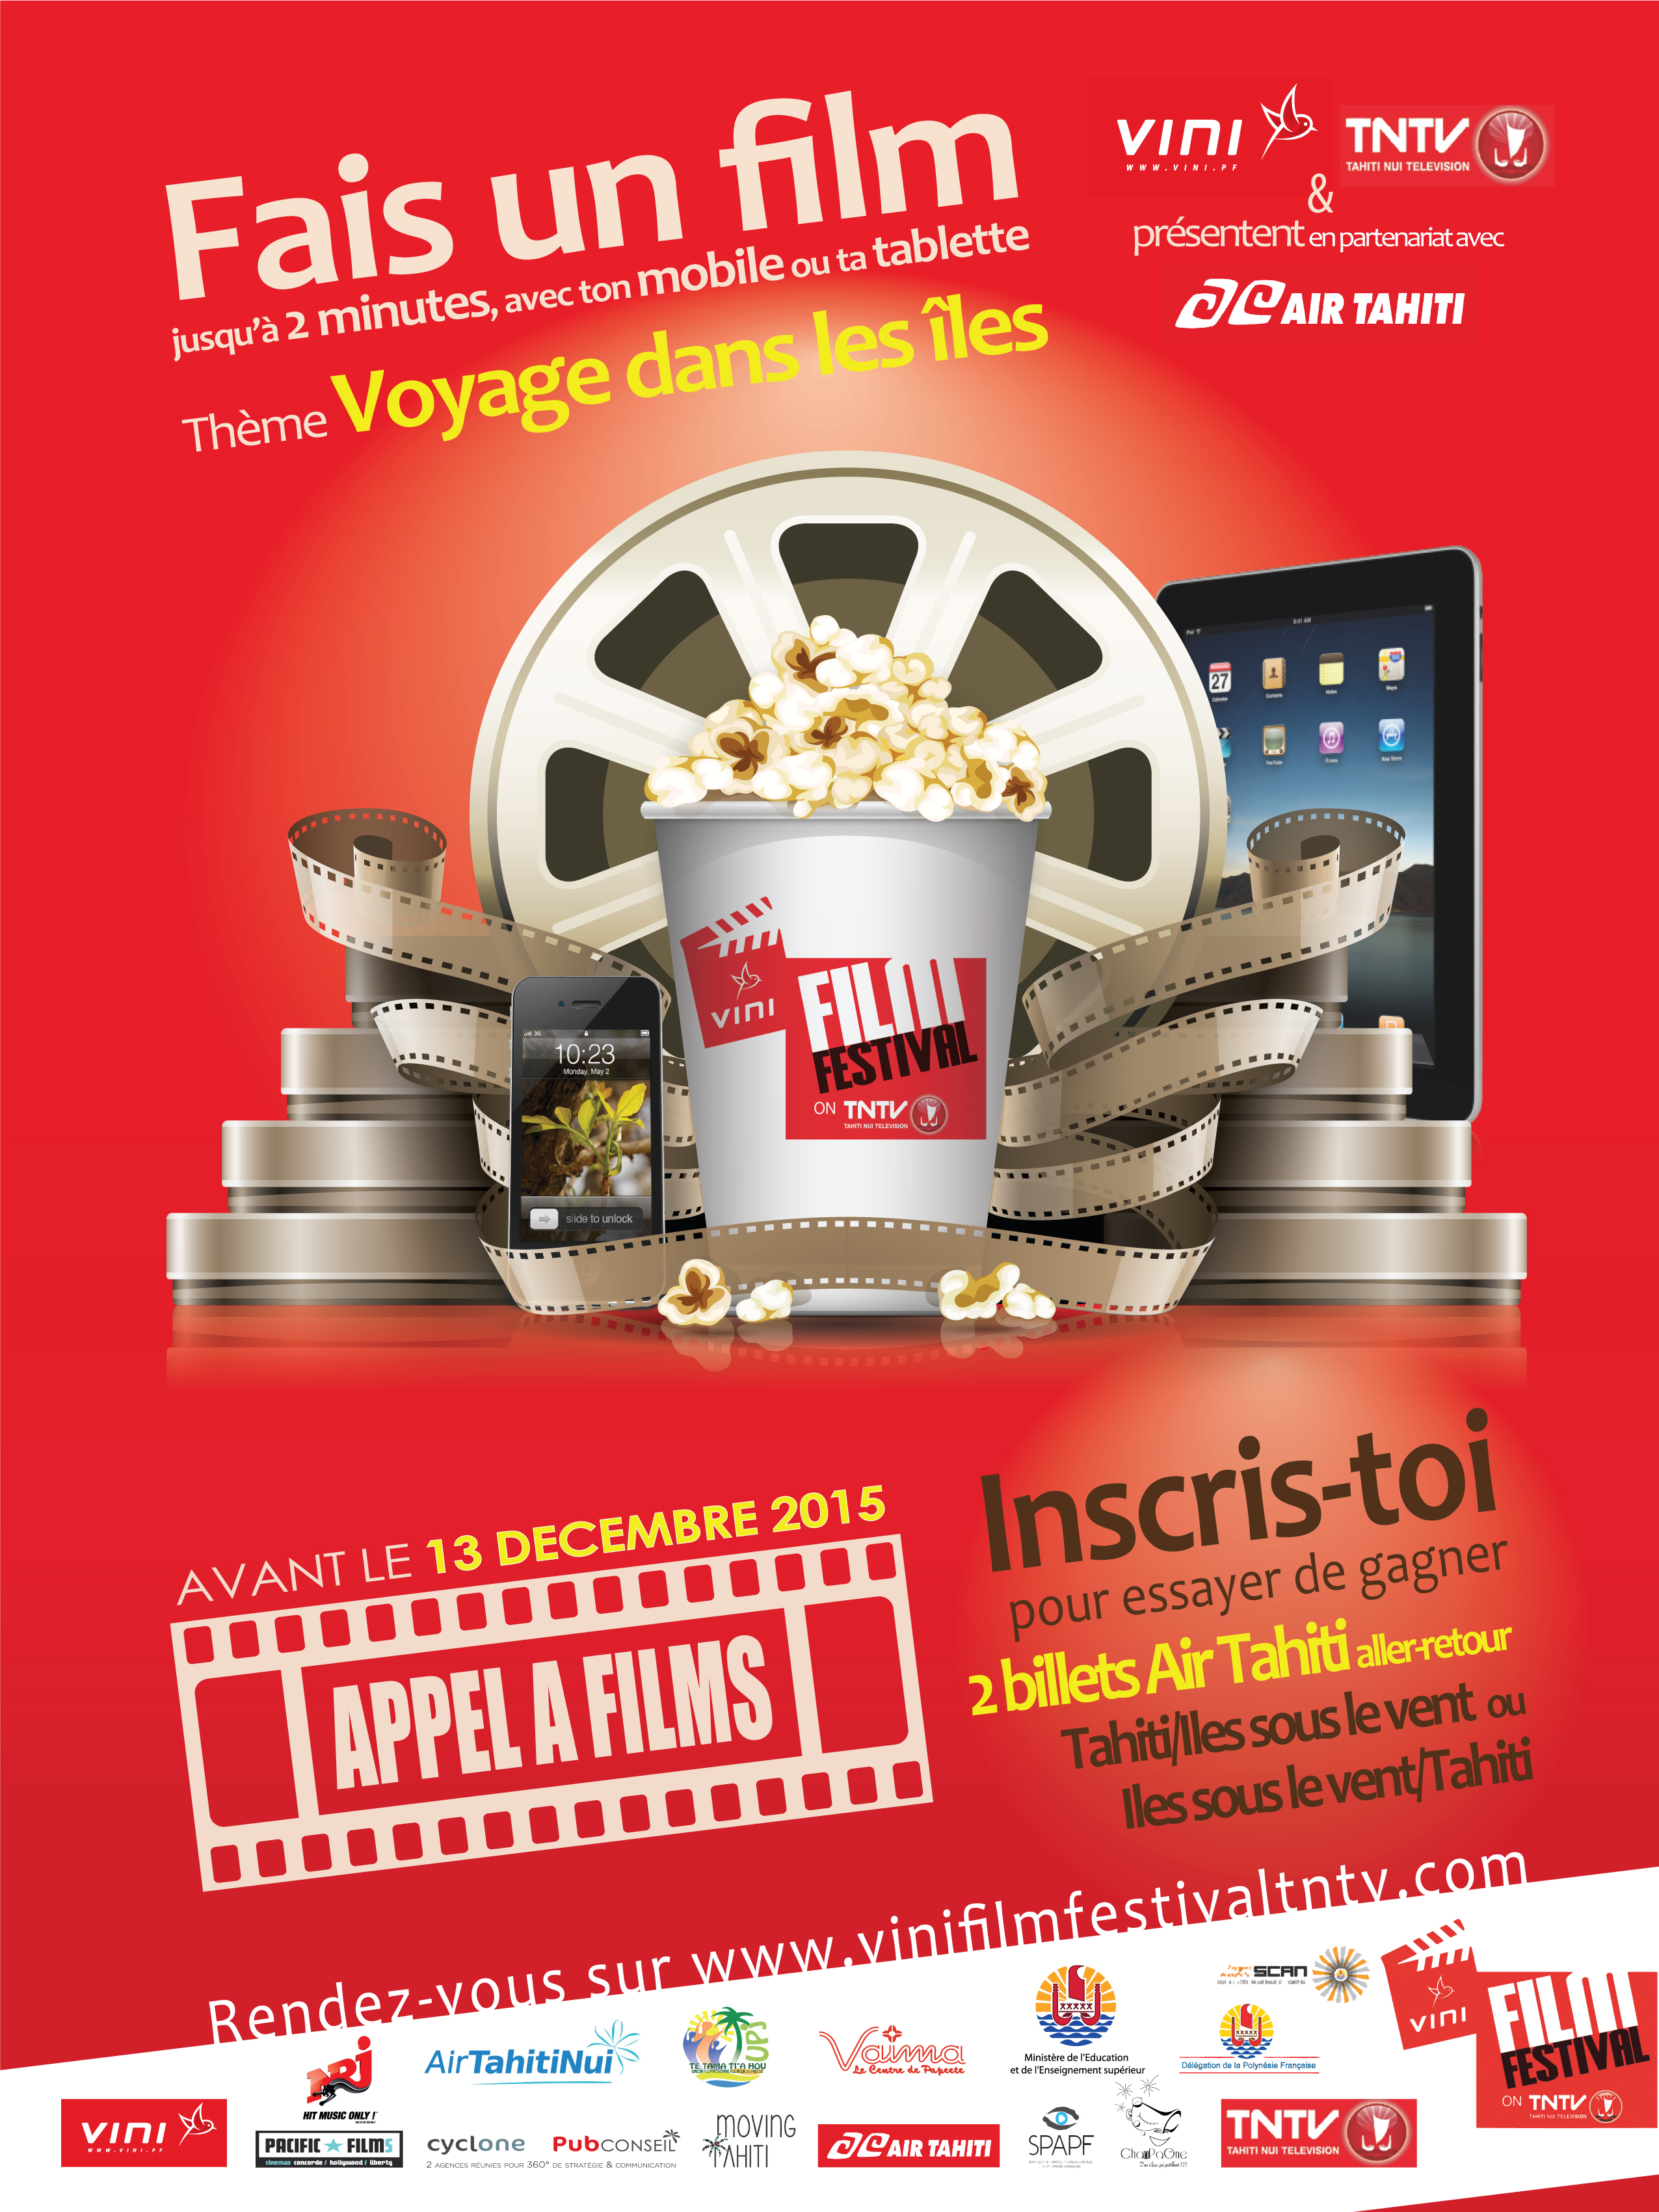 Vini film festival on TNTV : votez pour vos films préférés